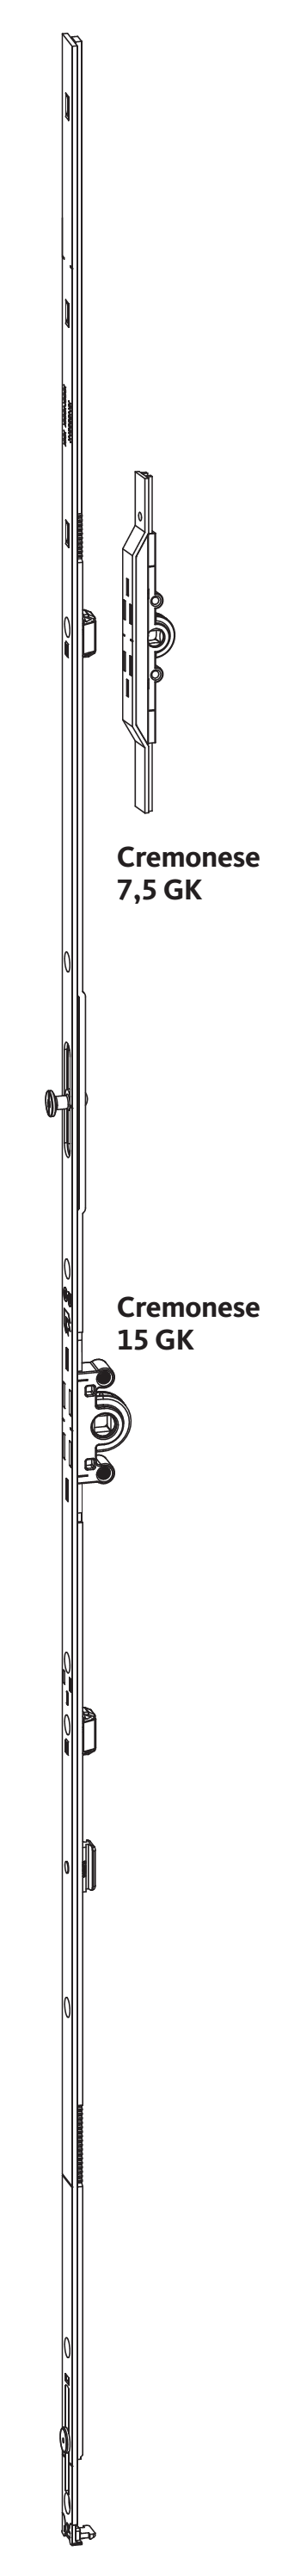 GU-ITALIA -  Cremonese UNI-JET anta ribalta altezza maniglia fissa con piedino senza dss per ribalta - gr / dim. 940 - entrata 7,5 - alt. man. 400 - lbb/hbb 851 - 1100